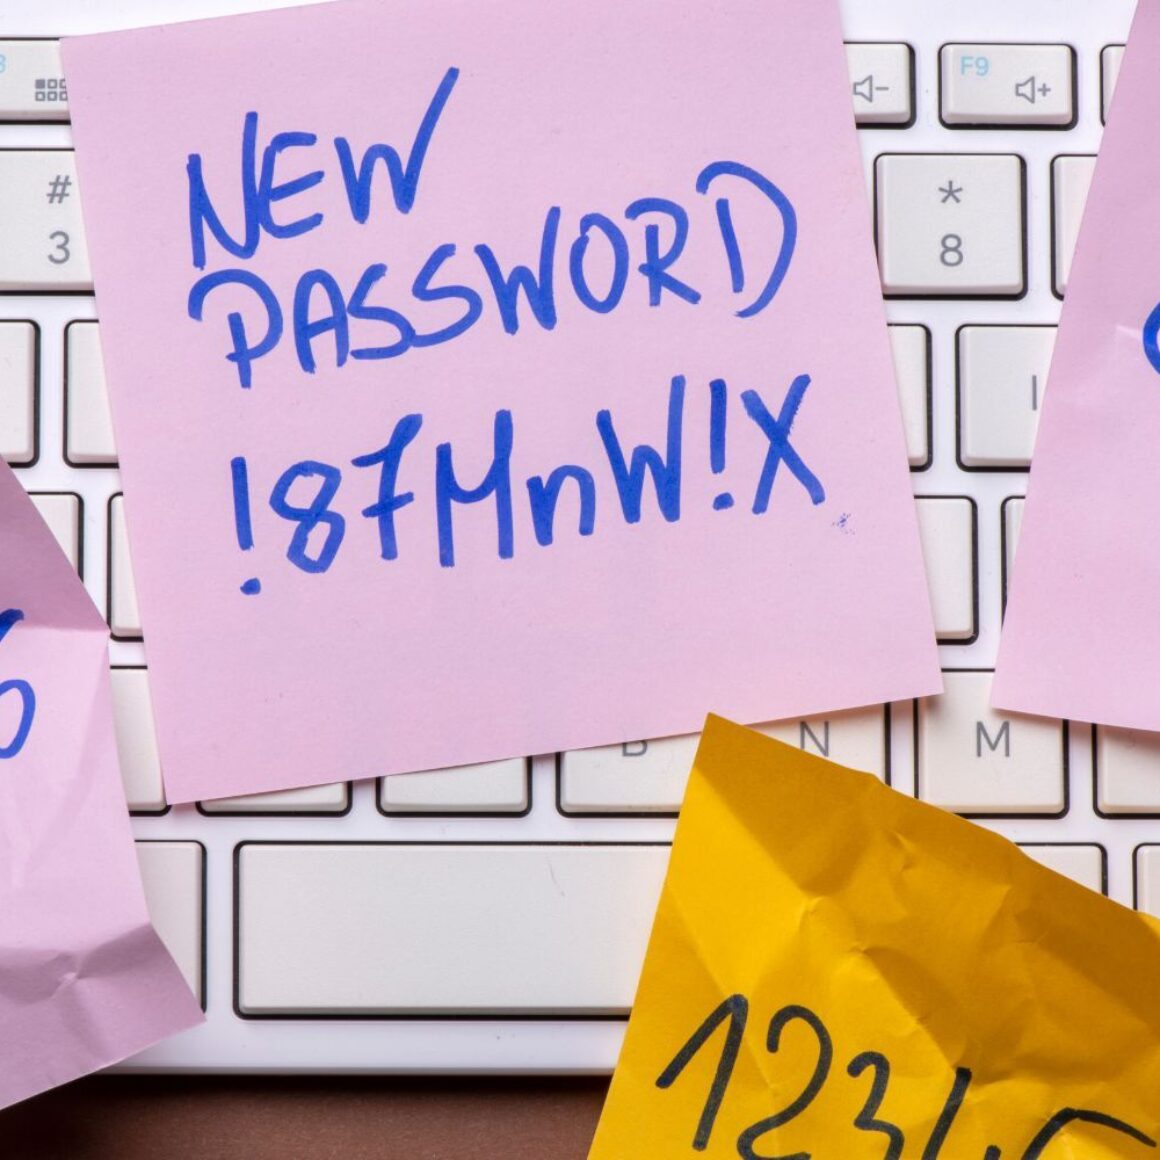 Tastatur mit Notizzetteln voller Passworte